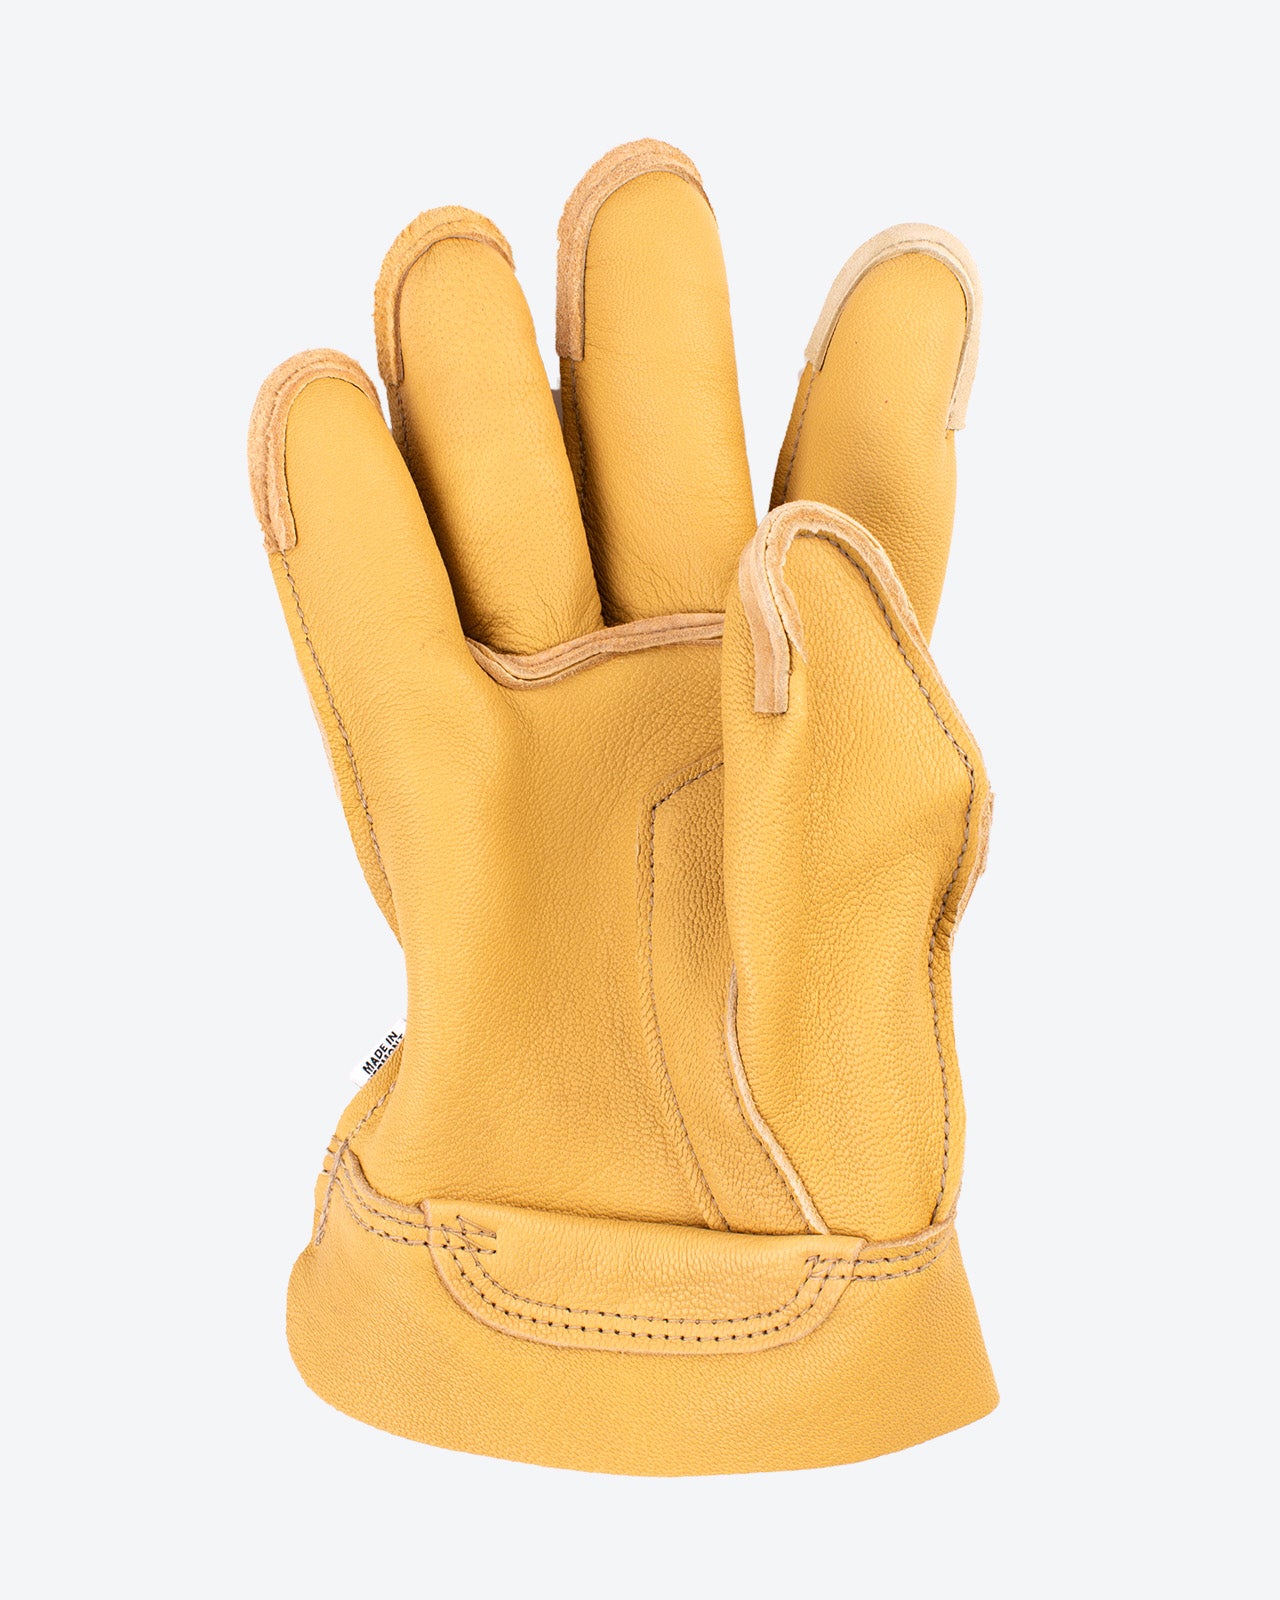 Single Glove or Mitten| Order Just One | Vermont Glove